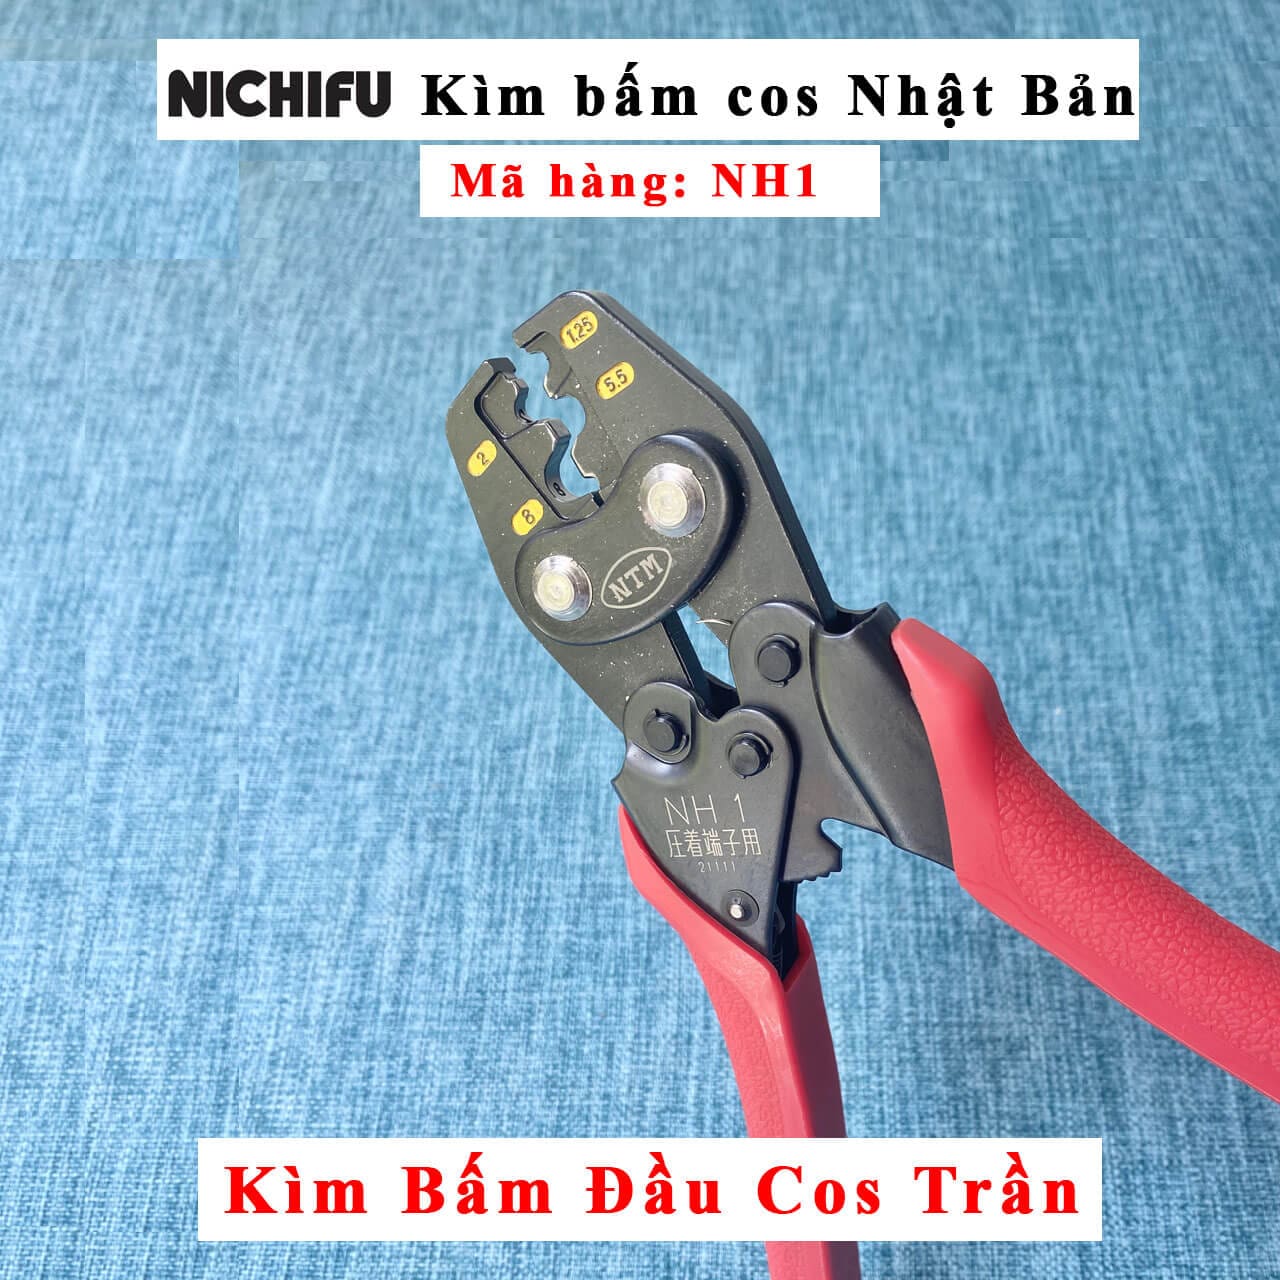 Kìm bấm cos NH1 Nichifu Nhật Bản bóp bằng tay có trợ lực cho đầu cos trần (không bọc nhựa), kìm bấm cos nh1 nichifu kìm NH 1 bóp bằng tay, có trợ lực, kìm bấm cos nh1 nichifu kiểu bấm điểm, kìm bấm cốt cosse Nh1 nichifu hiện số sau khi bấm đầu cos cho size cos 1.25 2 3.5 5.5 8 mm2, kìm bấm cos nh1 nichifu